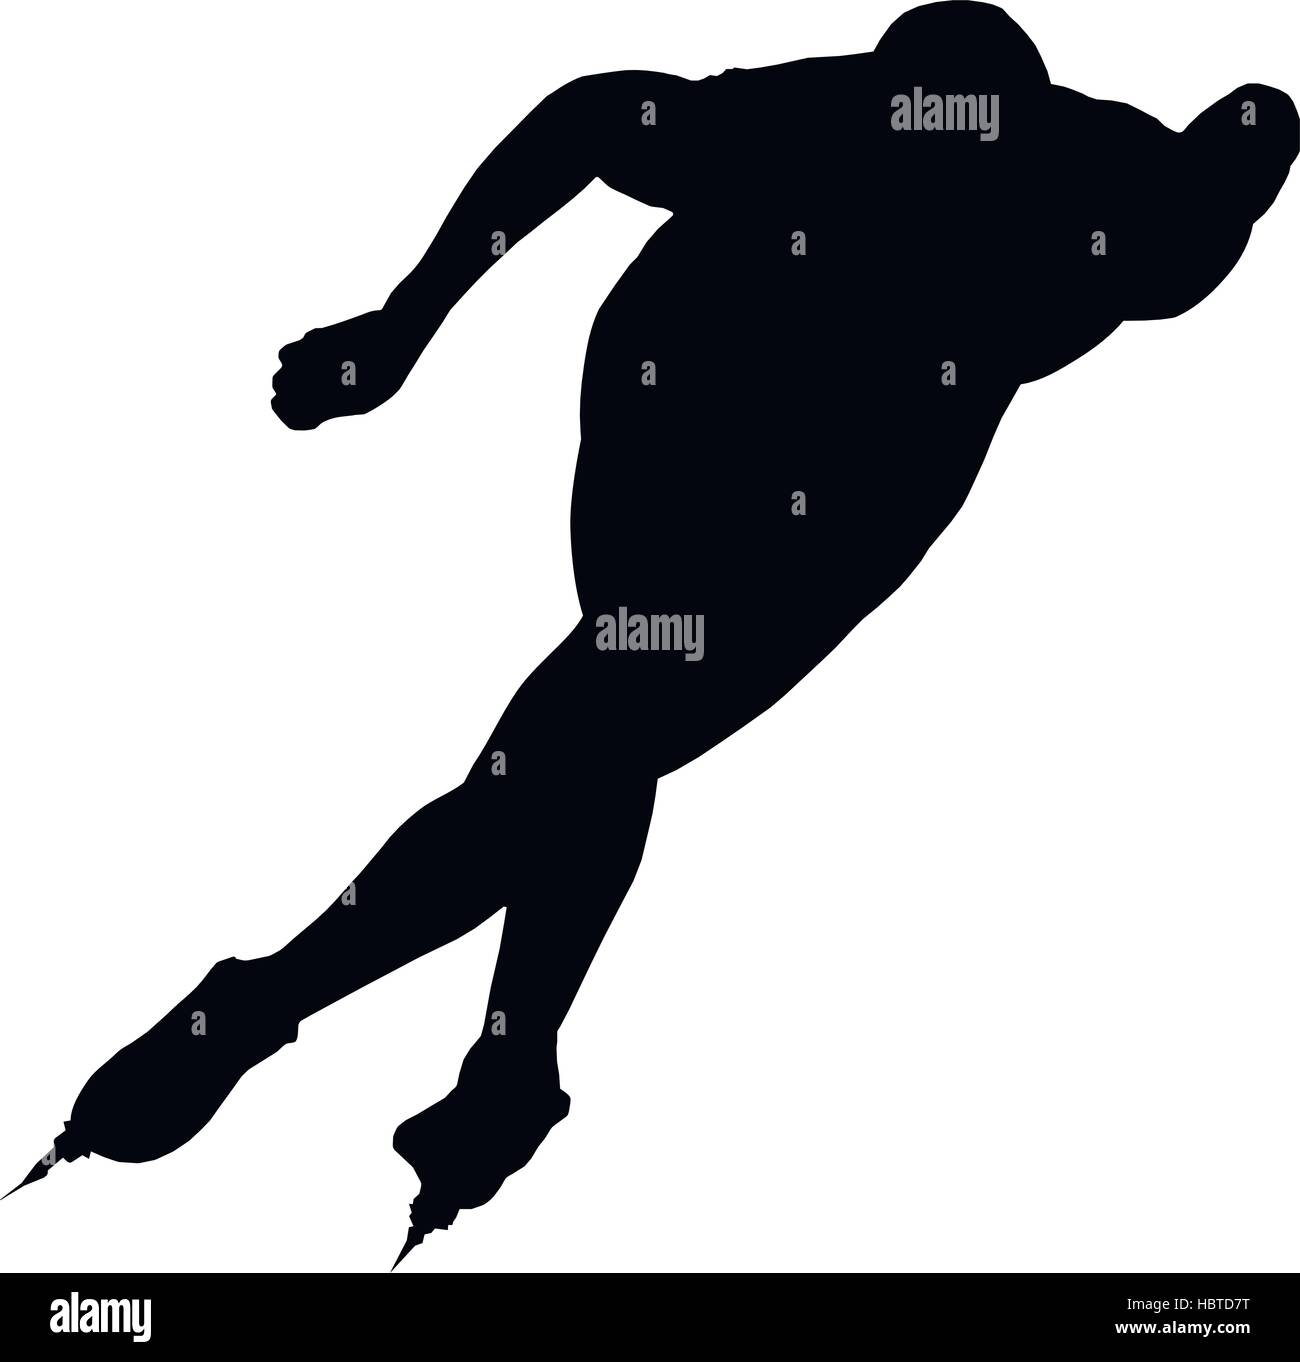 Les patineurs de vitesse homme silhouette noire sur fond blanc vector Illustration Illustration de Vecteur